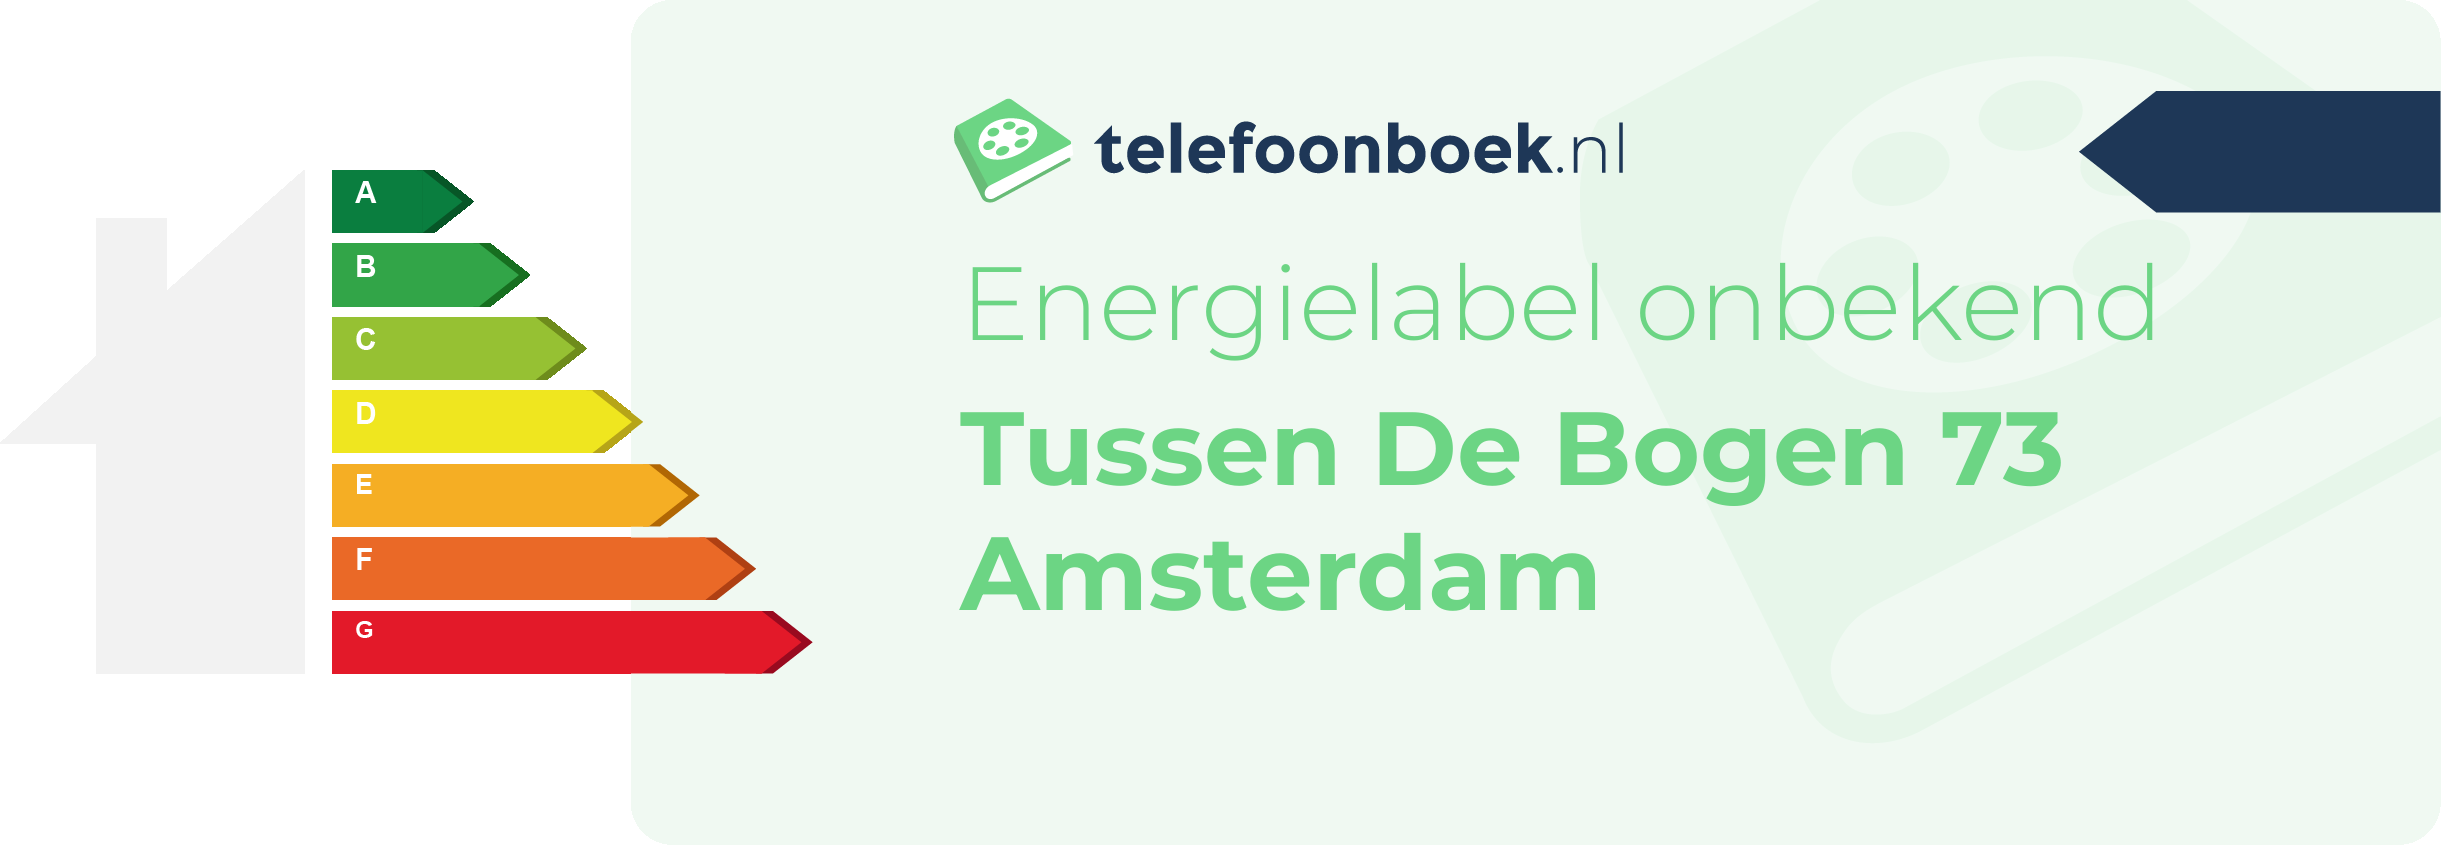 Energielabel Tussen De Bogen 73 Amsterdam